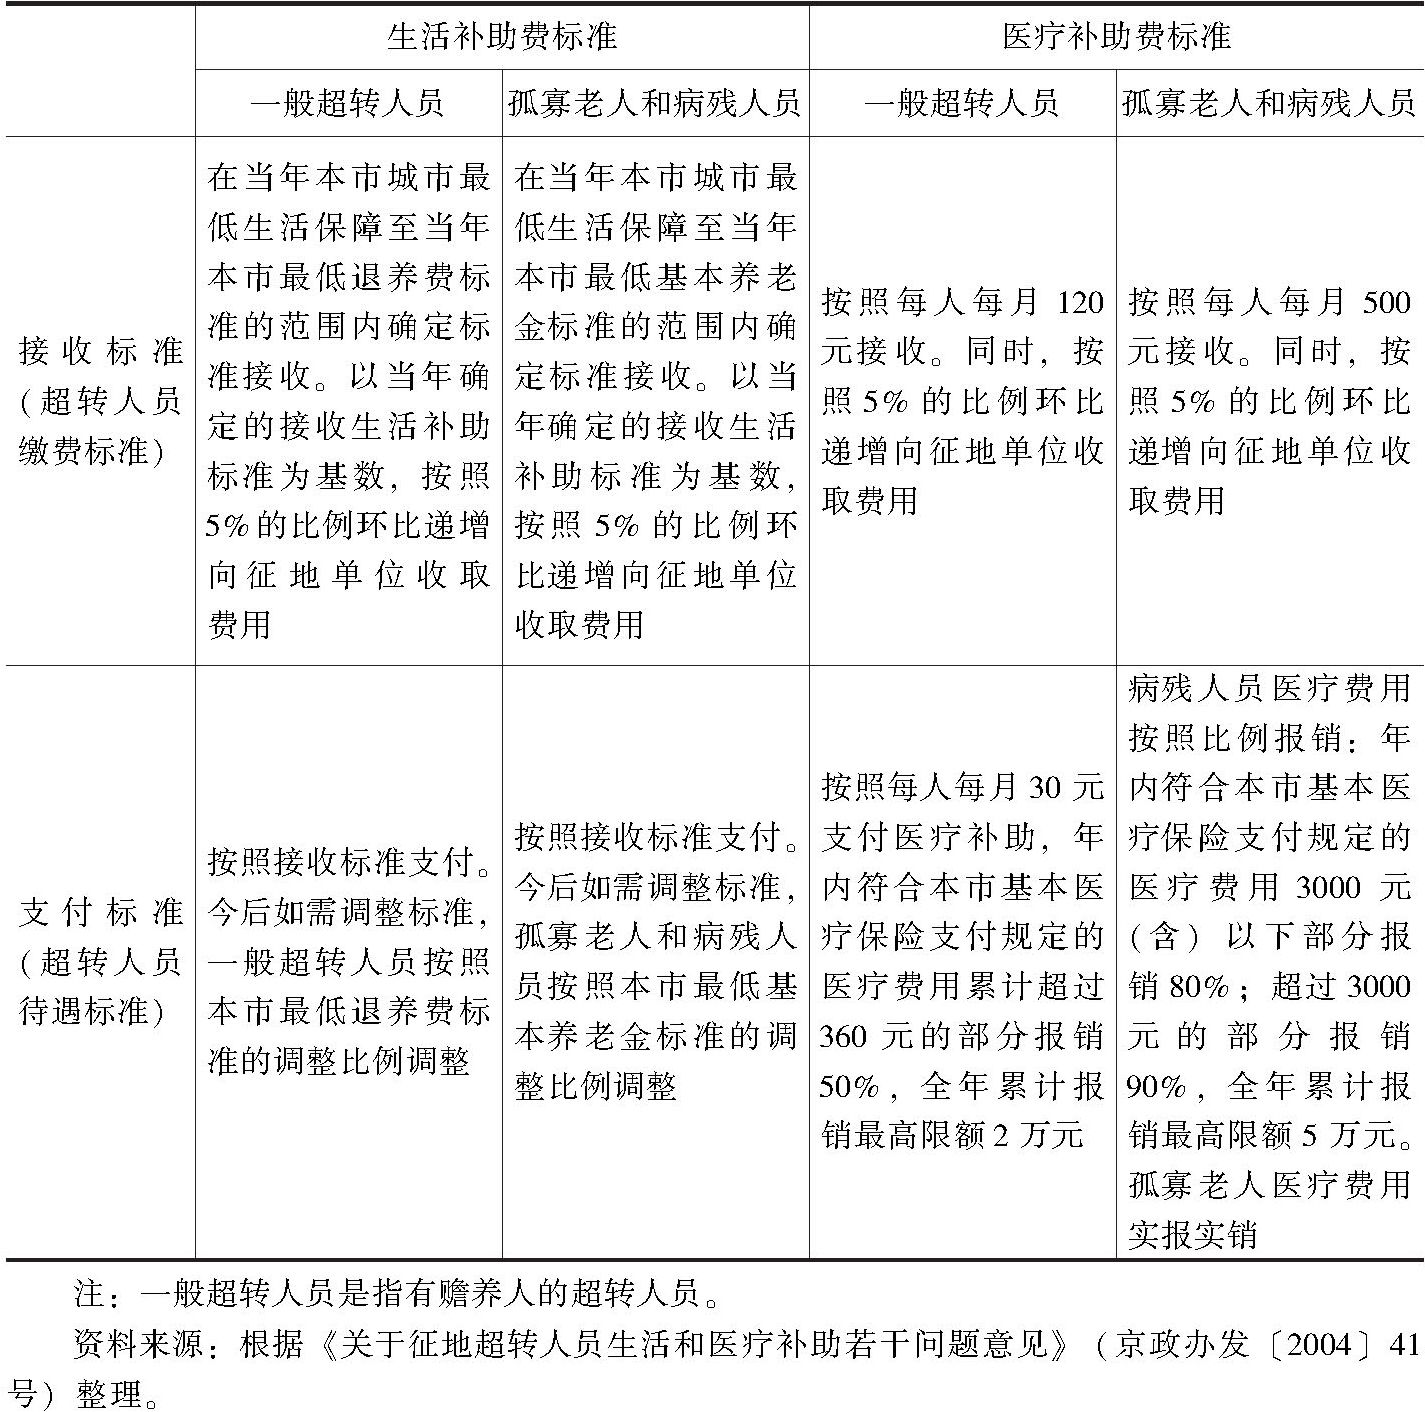 表4 北京市征地超转人员生活和医疗补助情况